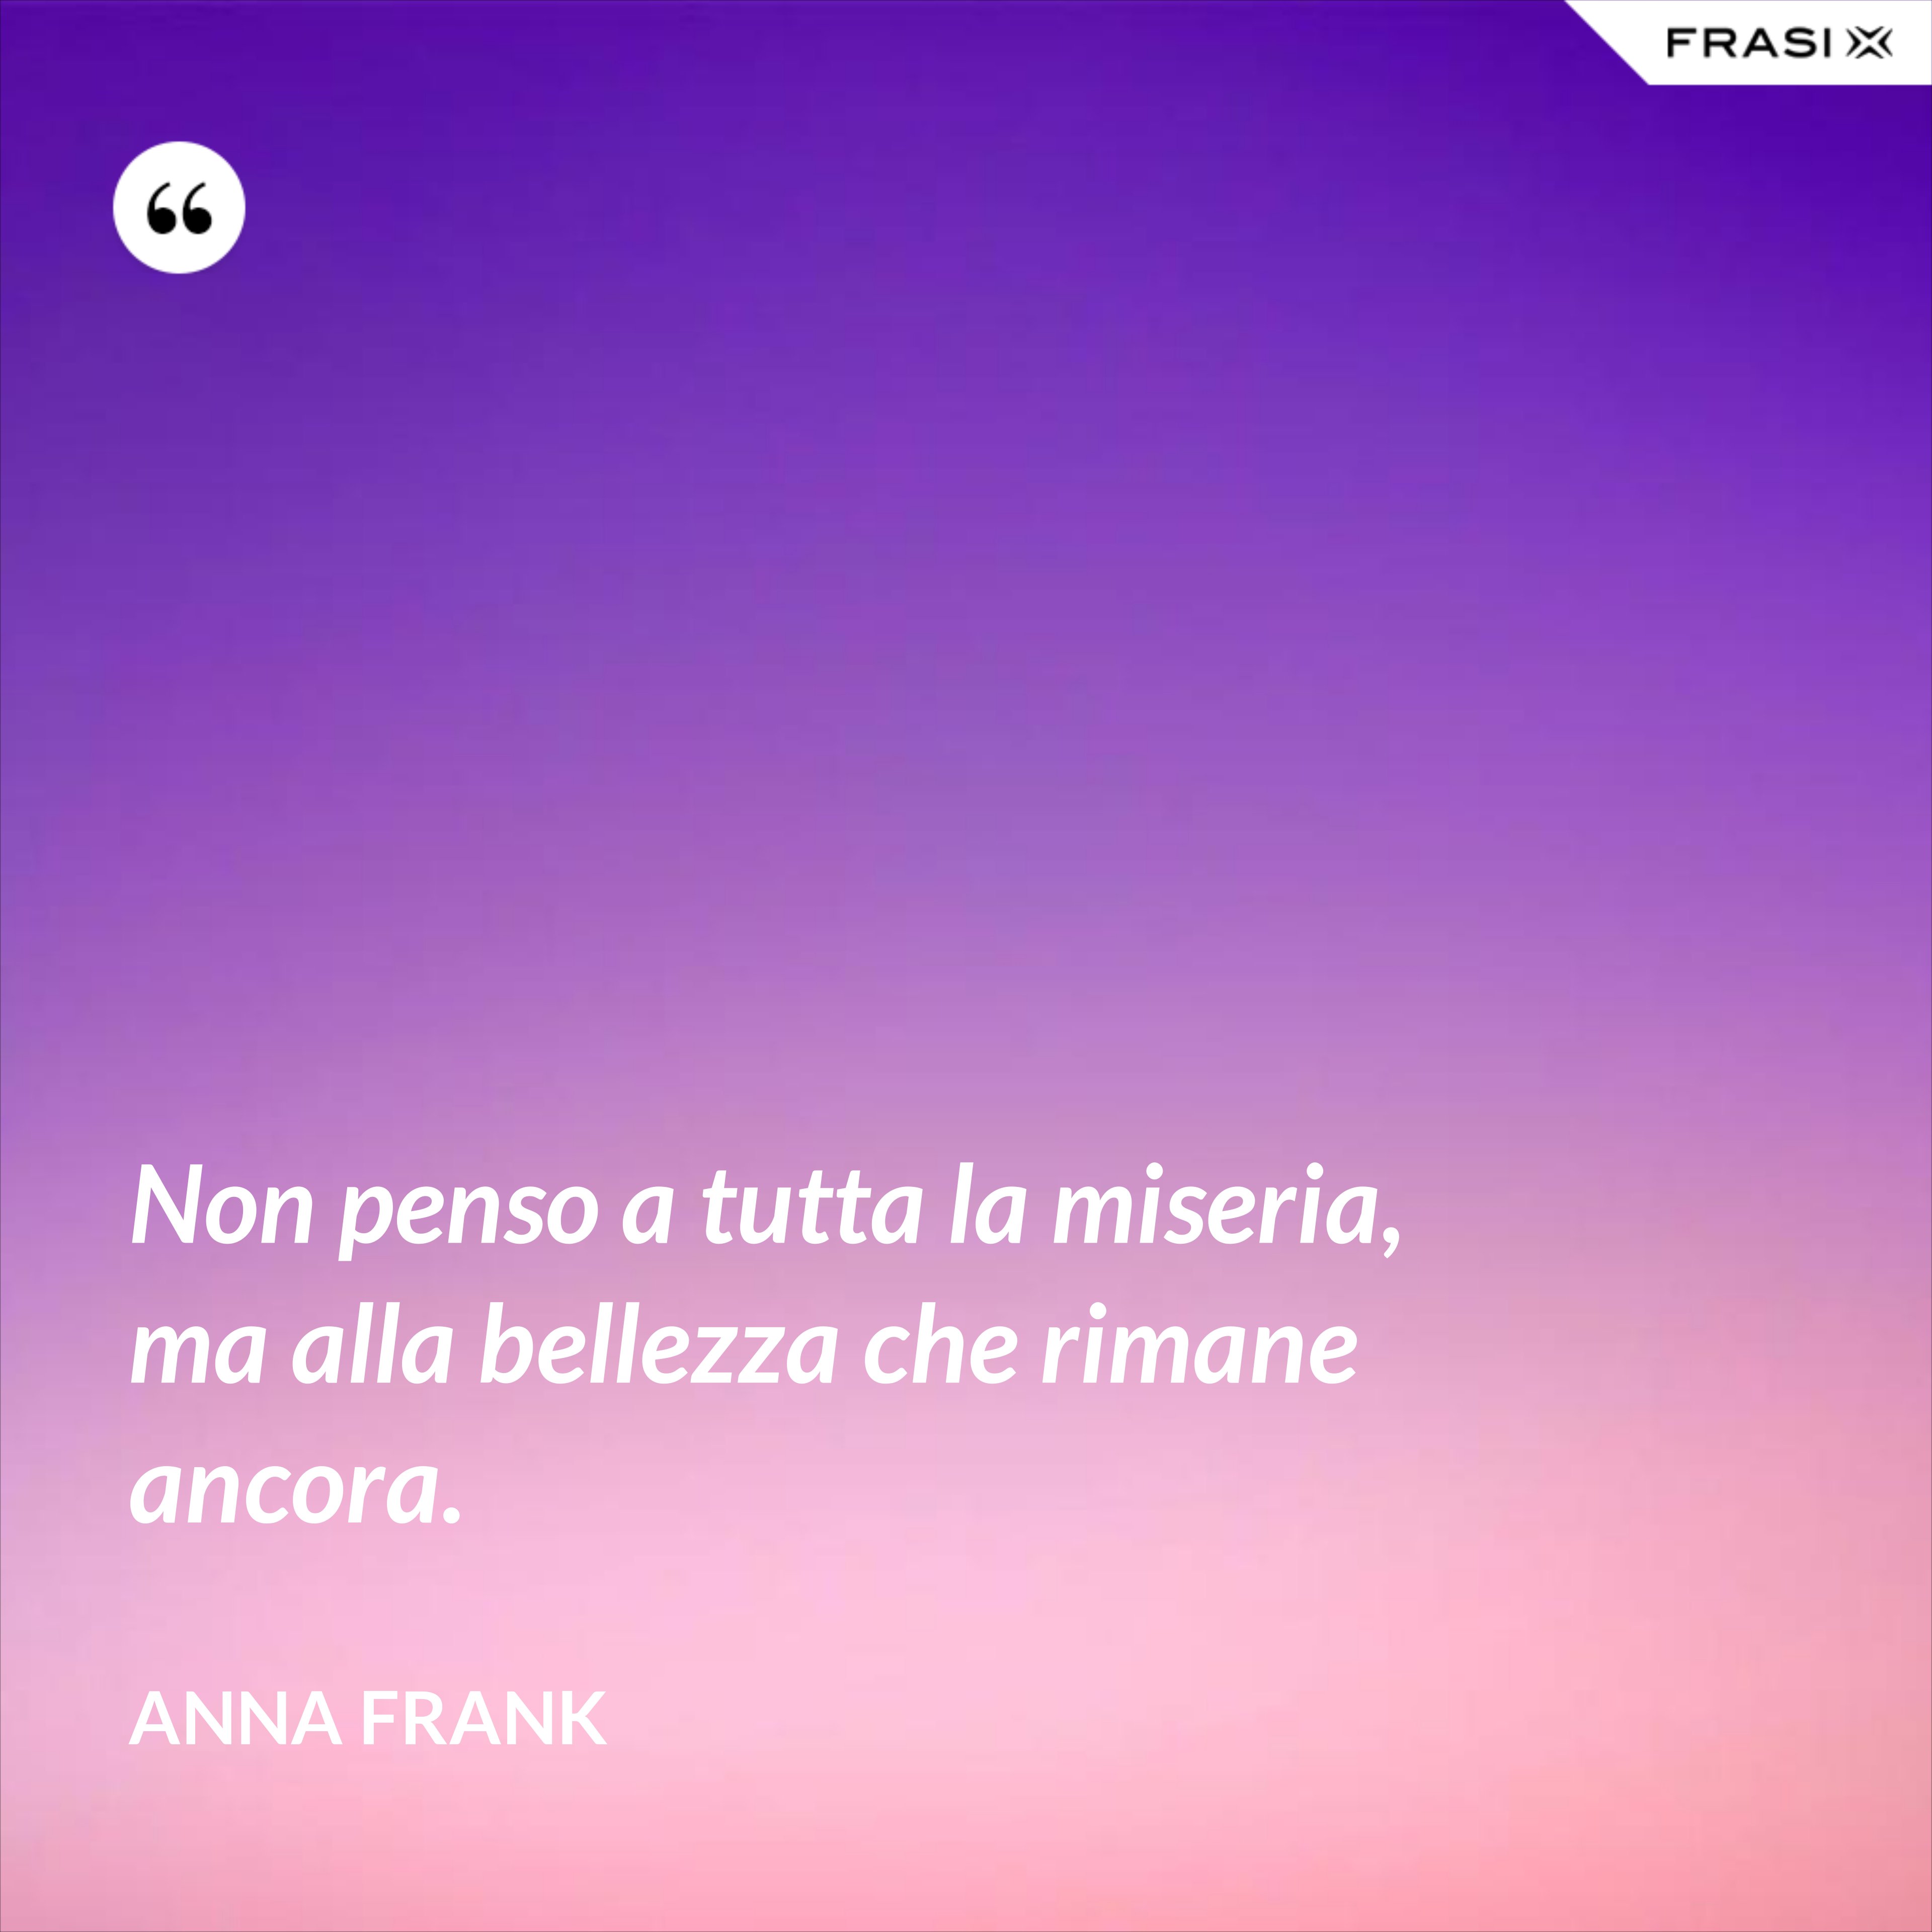 Non penso a tutta la miseria, ma alla bellezza che rimane ancora. - Anna Frank